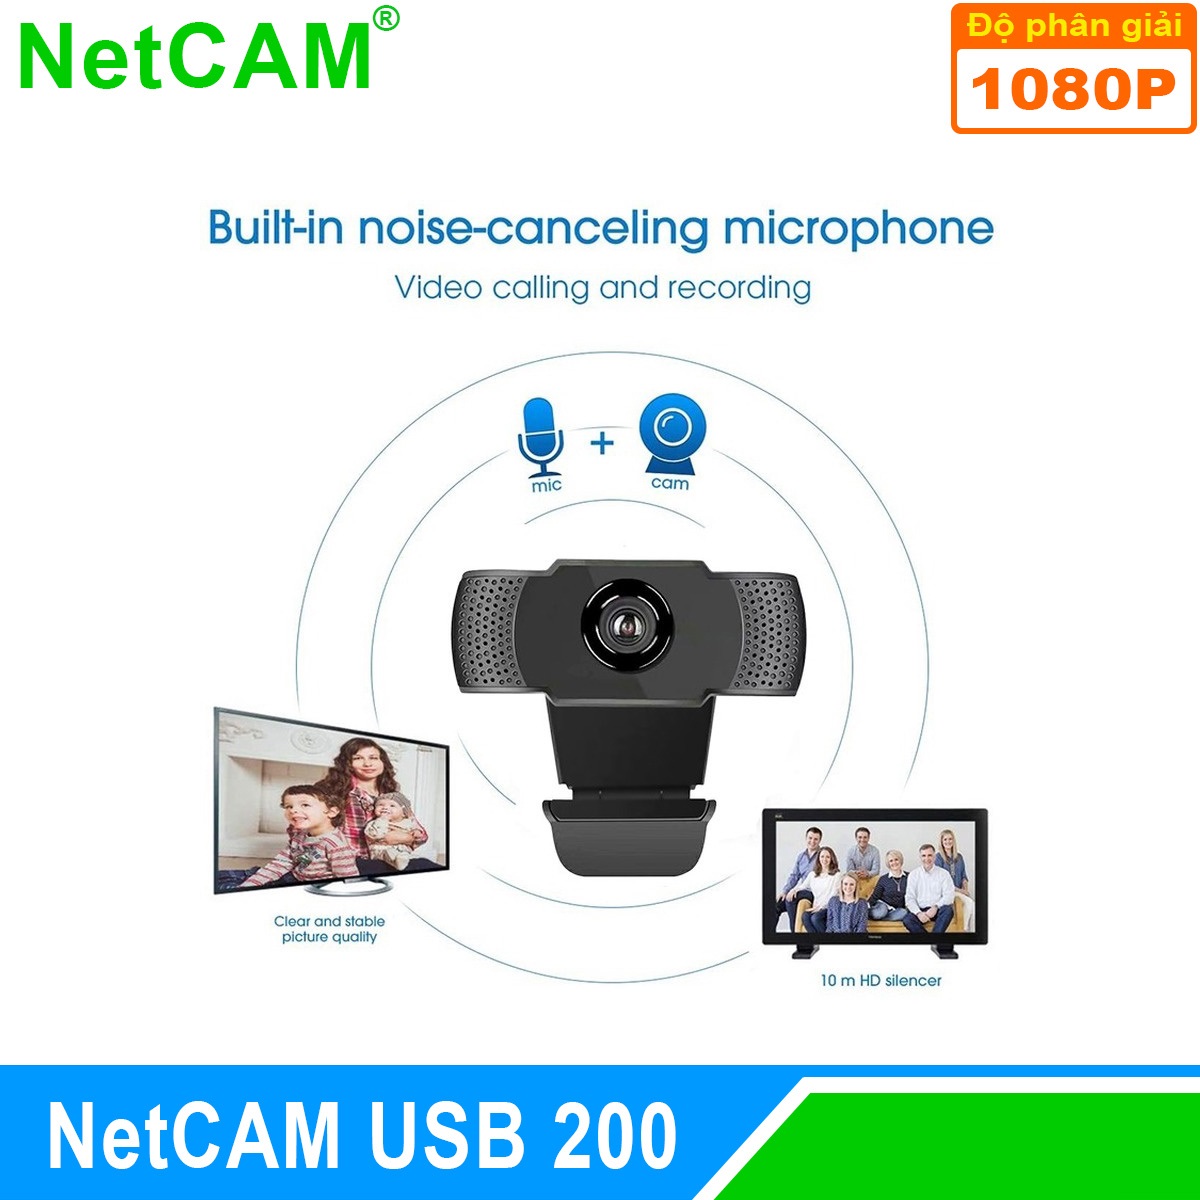 Webcam NetCAM USB 200 độ phân giải 1080P - Hàng Chính Hãng